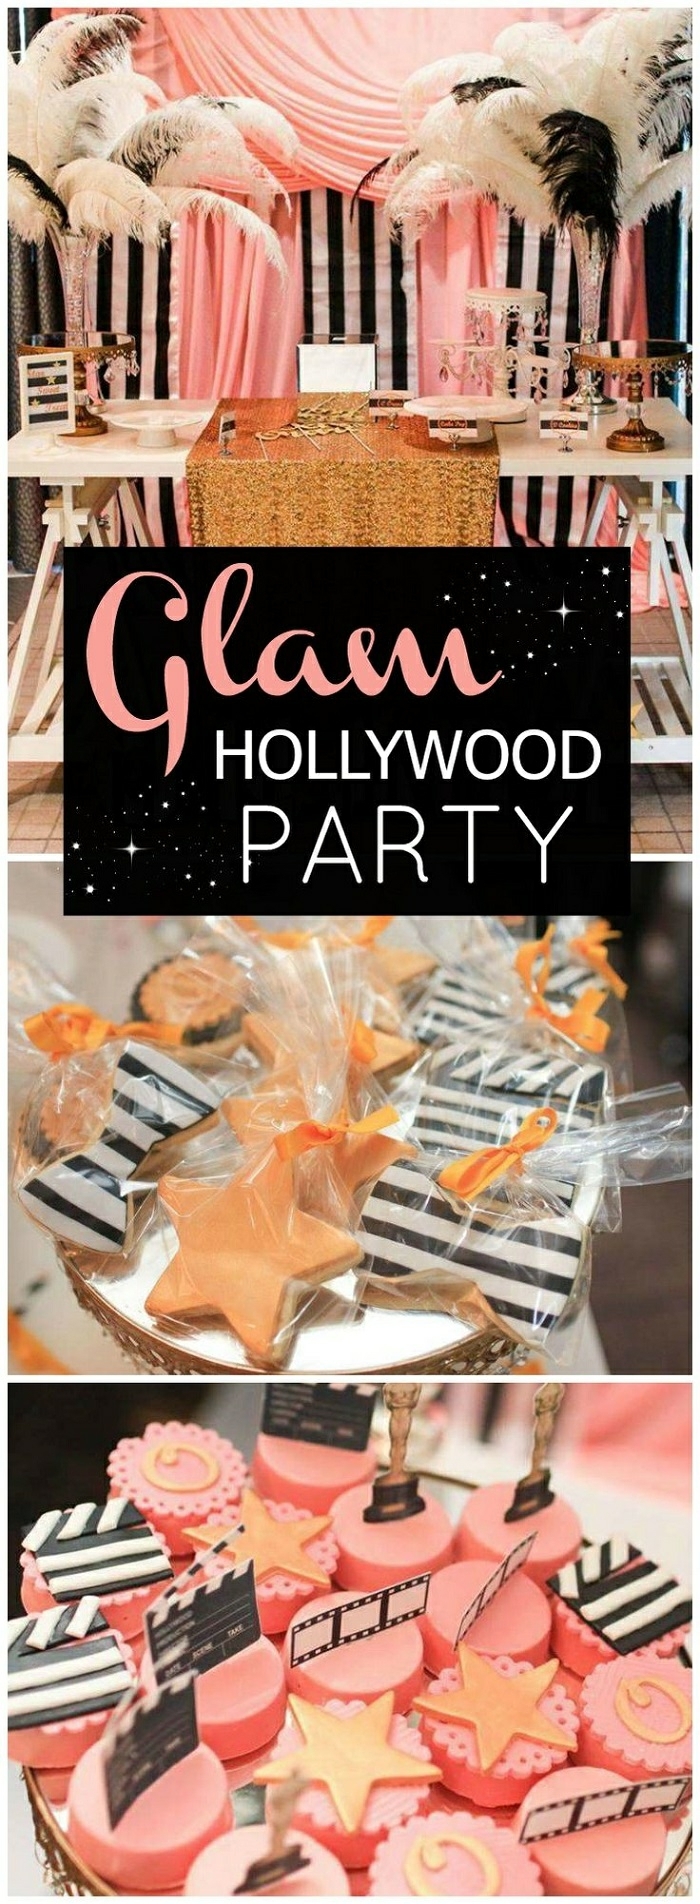 18 geburtstag deko bei einer holywood party in schwarz weiß und rosa, glamouröse partyidee, sterne kekse, feder deko